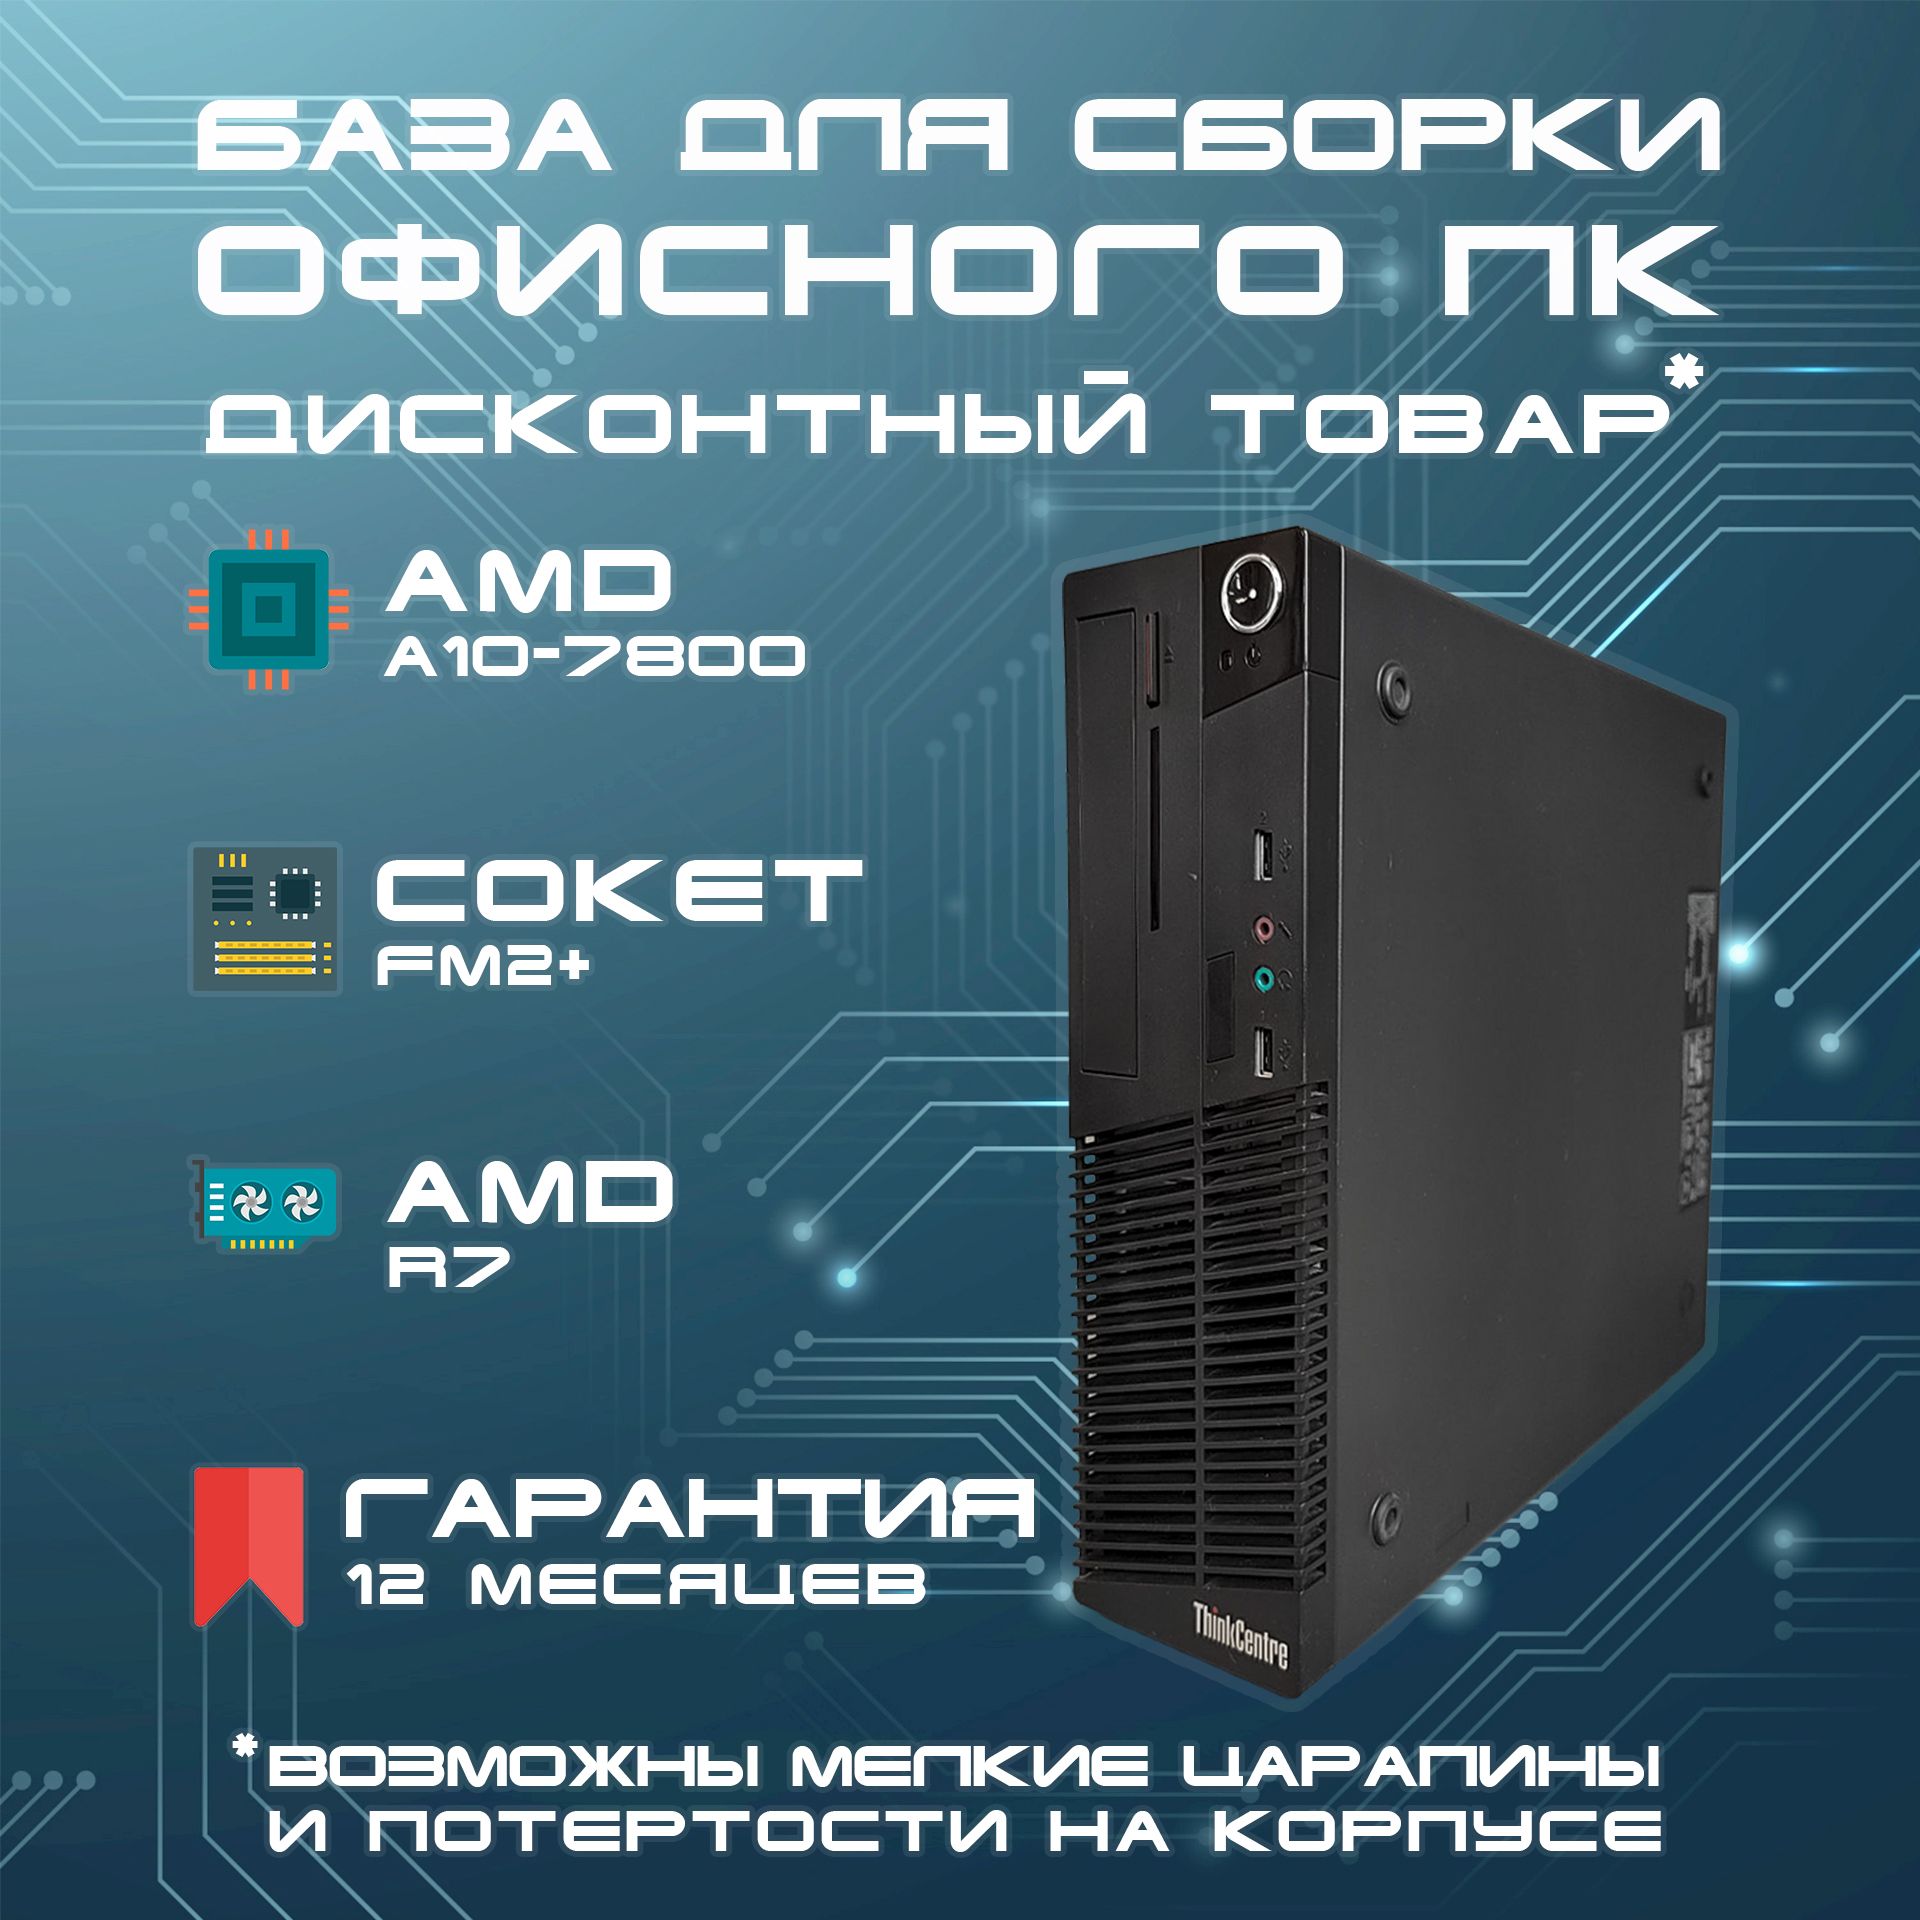 LenovoСистемныйблокThinkcentre(AMDA10-7800,RAMОтсутствует,AMDRadeonR7,БезОС),черный